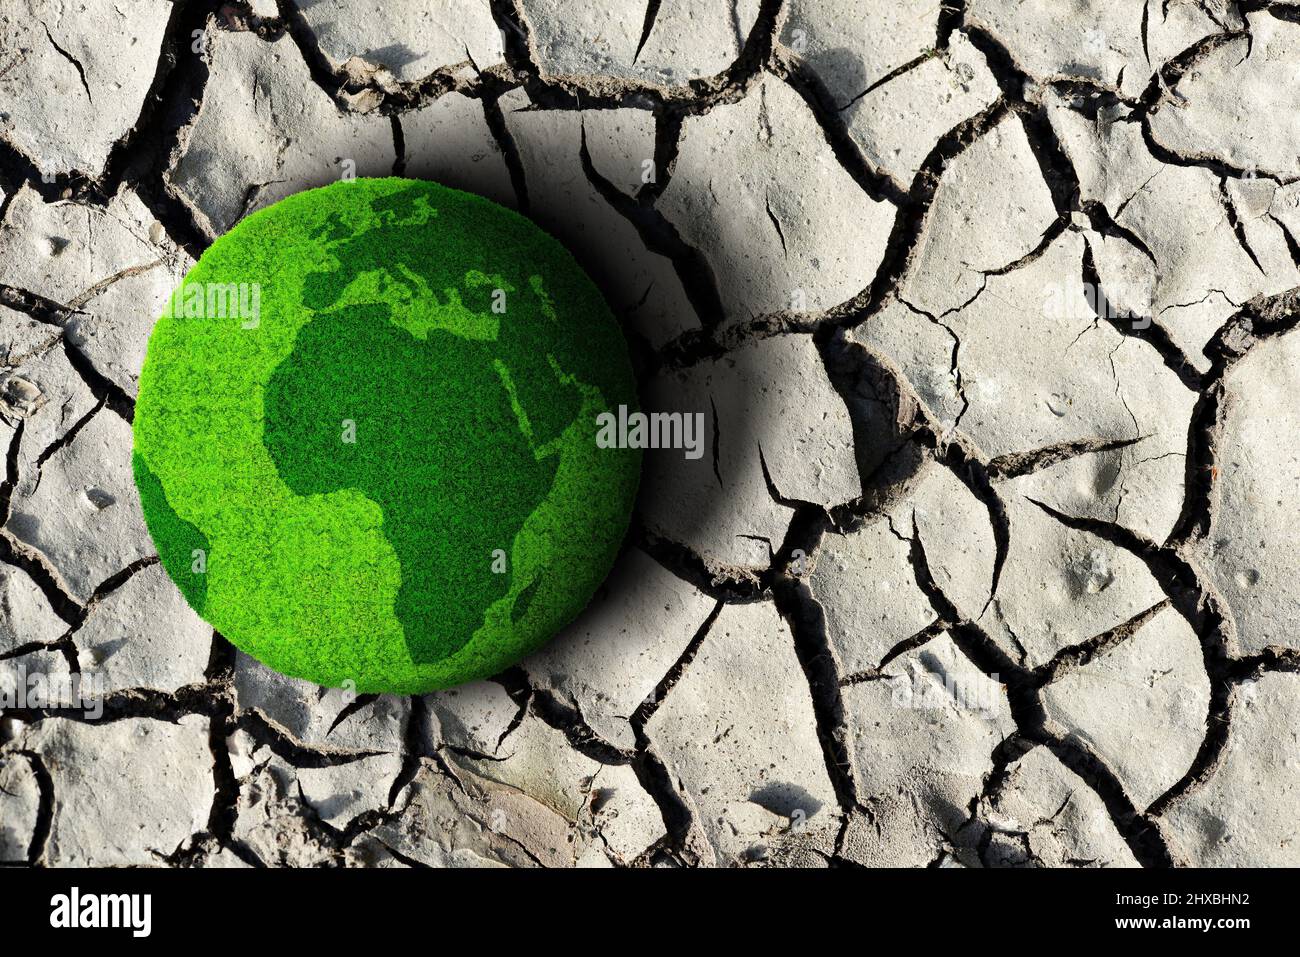 Planète verte sur le sol sec fissuré. Concept de changement climatique ou réchauffement climatique. Banque D'Images